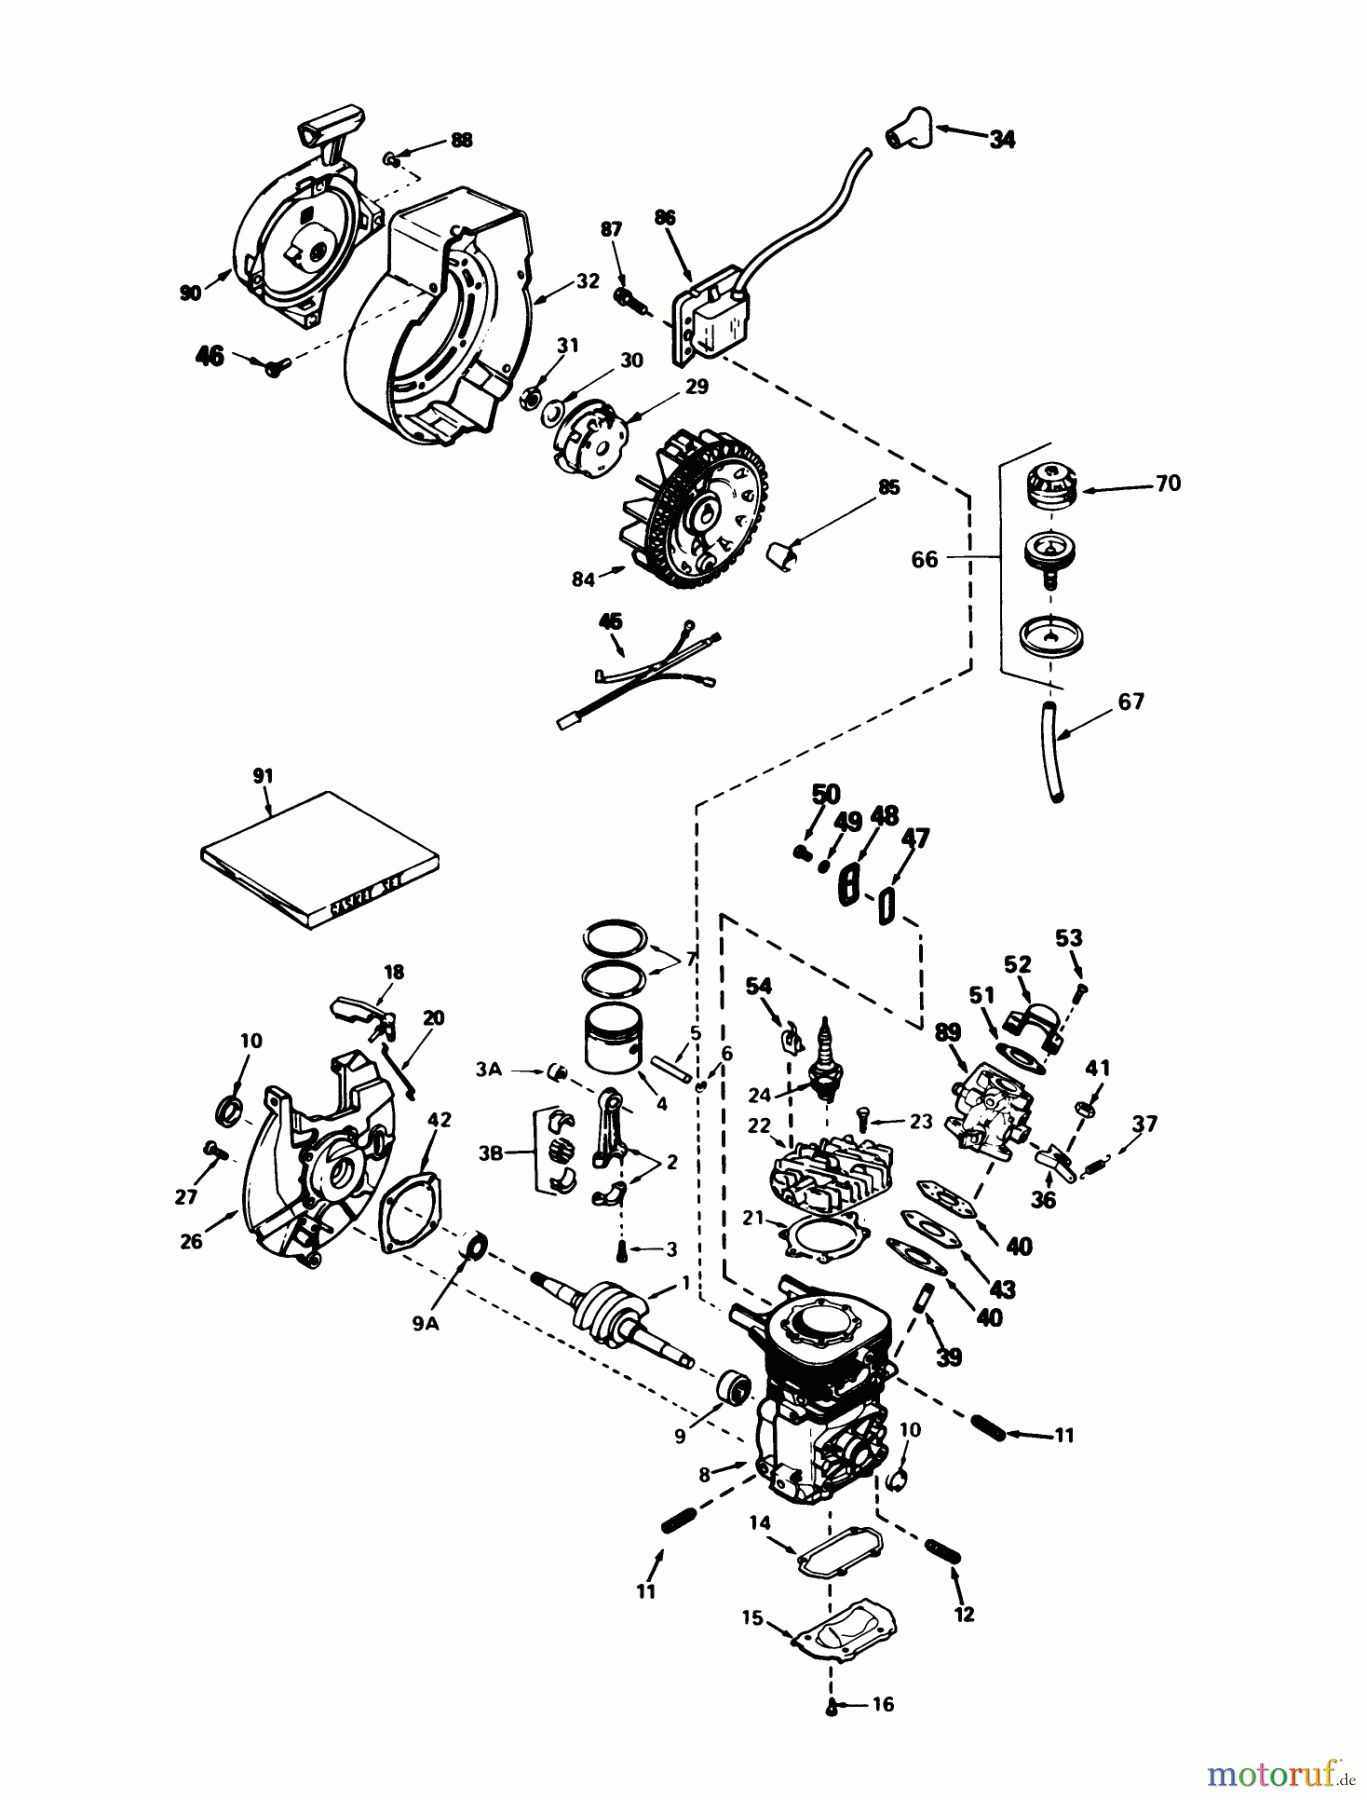  Toro Neu Snow Blowers/Snow Throwers Seite 1 38162C (S-620) - Toro S-620 Snowthrower, 1984 (4000001-4999999) ENGINE TECUMSEH MODEL AH-600 TYPE 1623-A